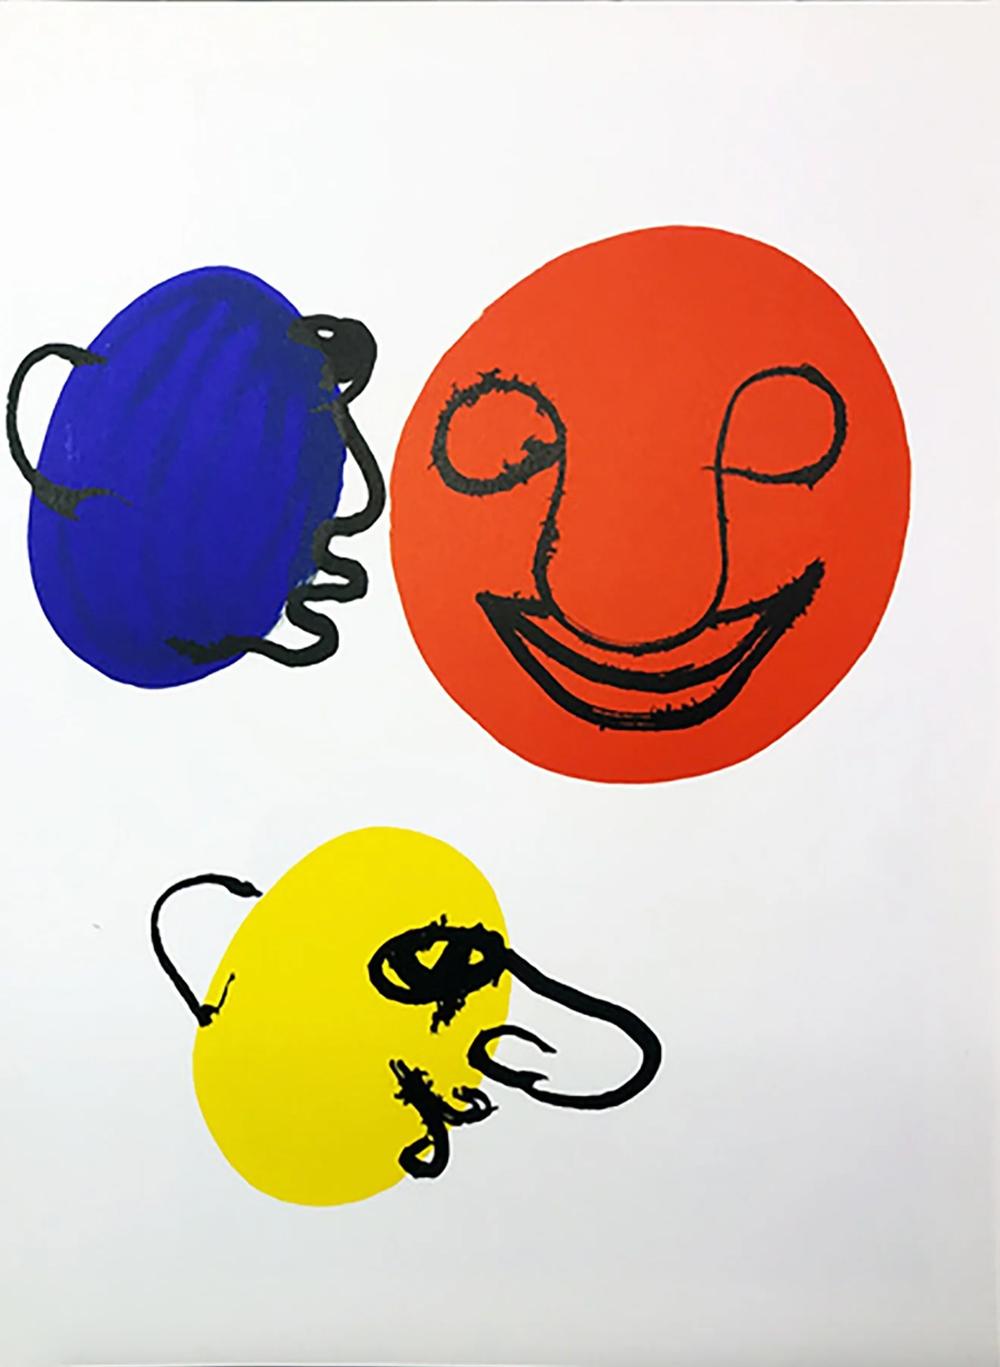 Alexander Calder Print - Derriere le Miroir #221